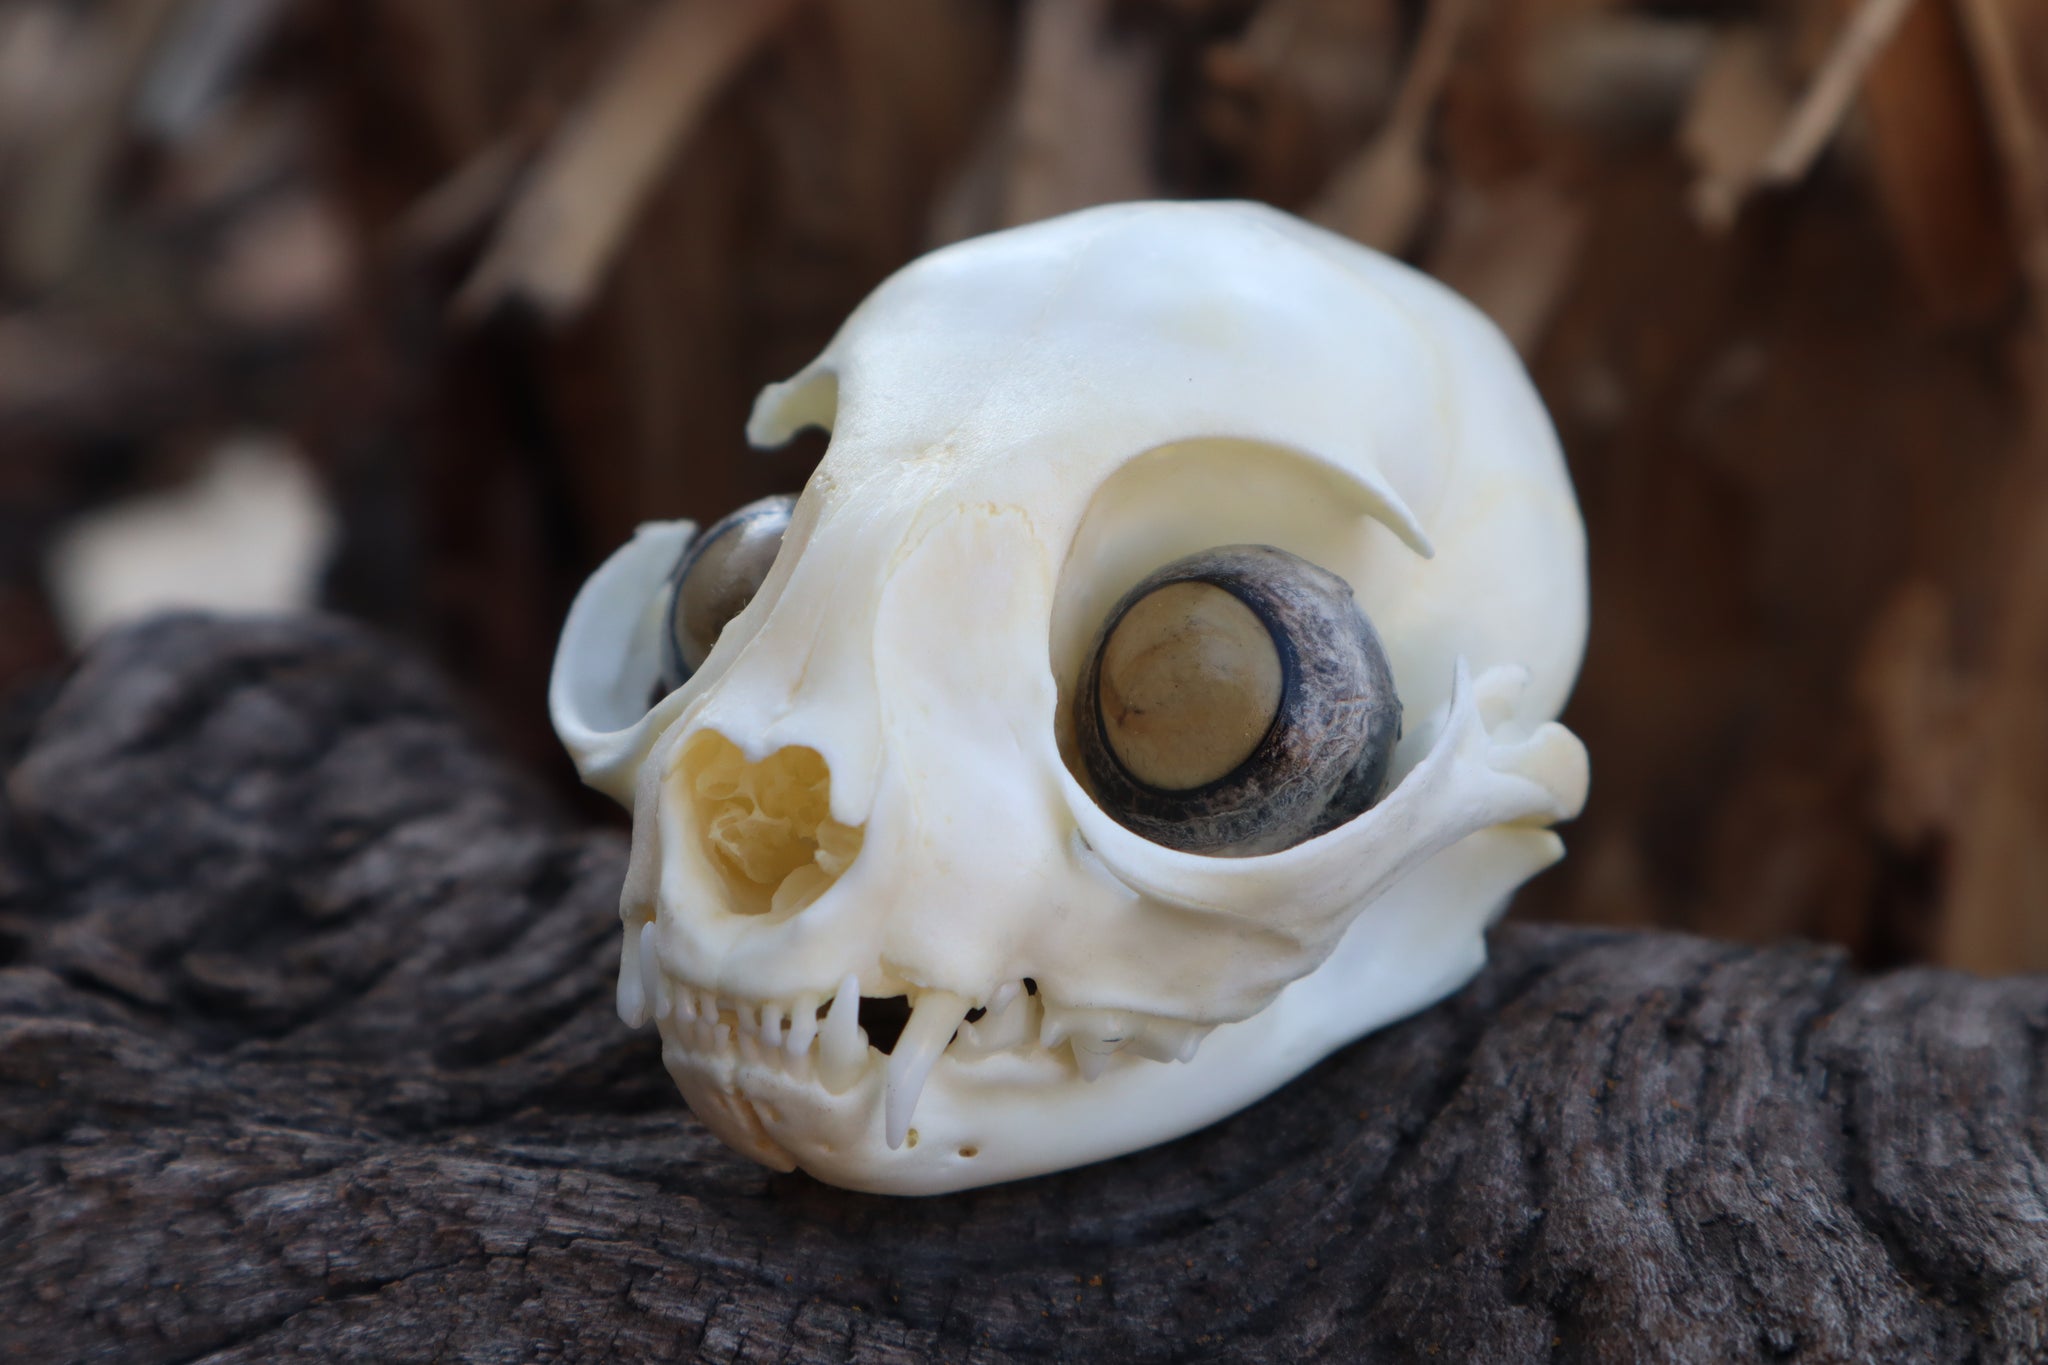 Kitten Skull with Dry Preserved Eyeballs